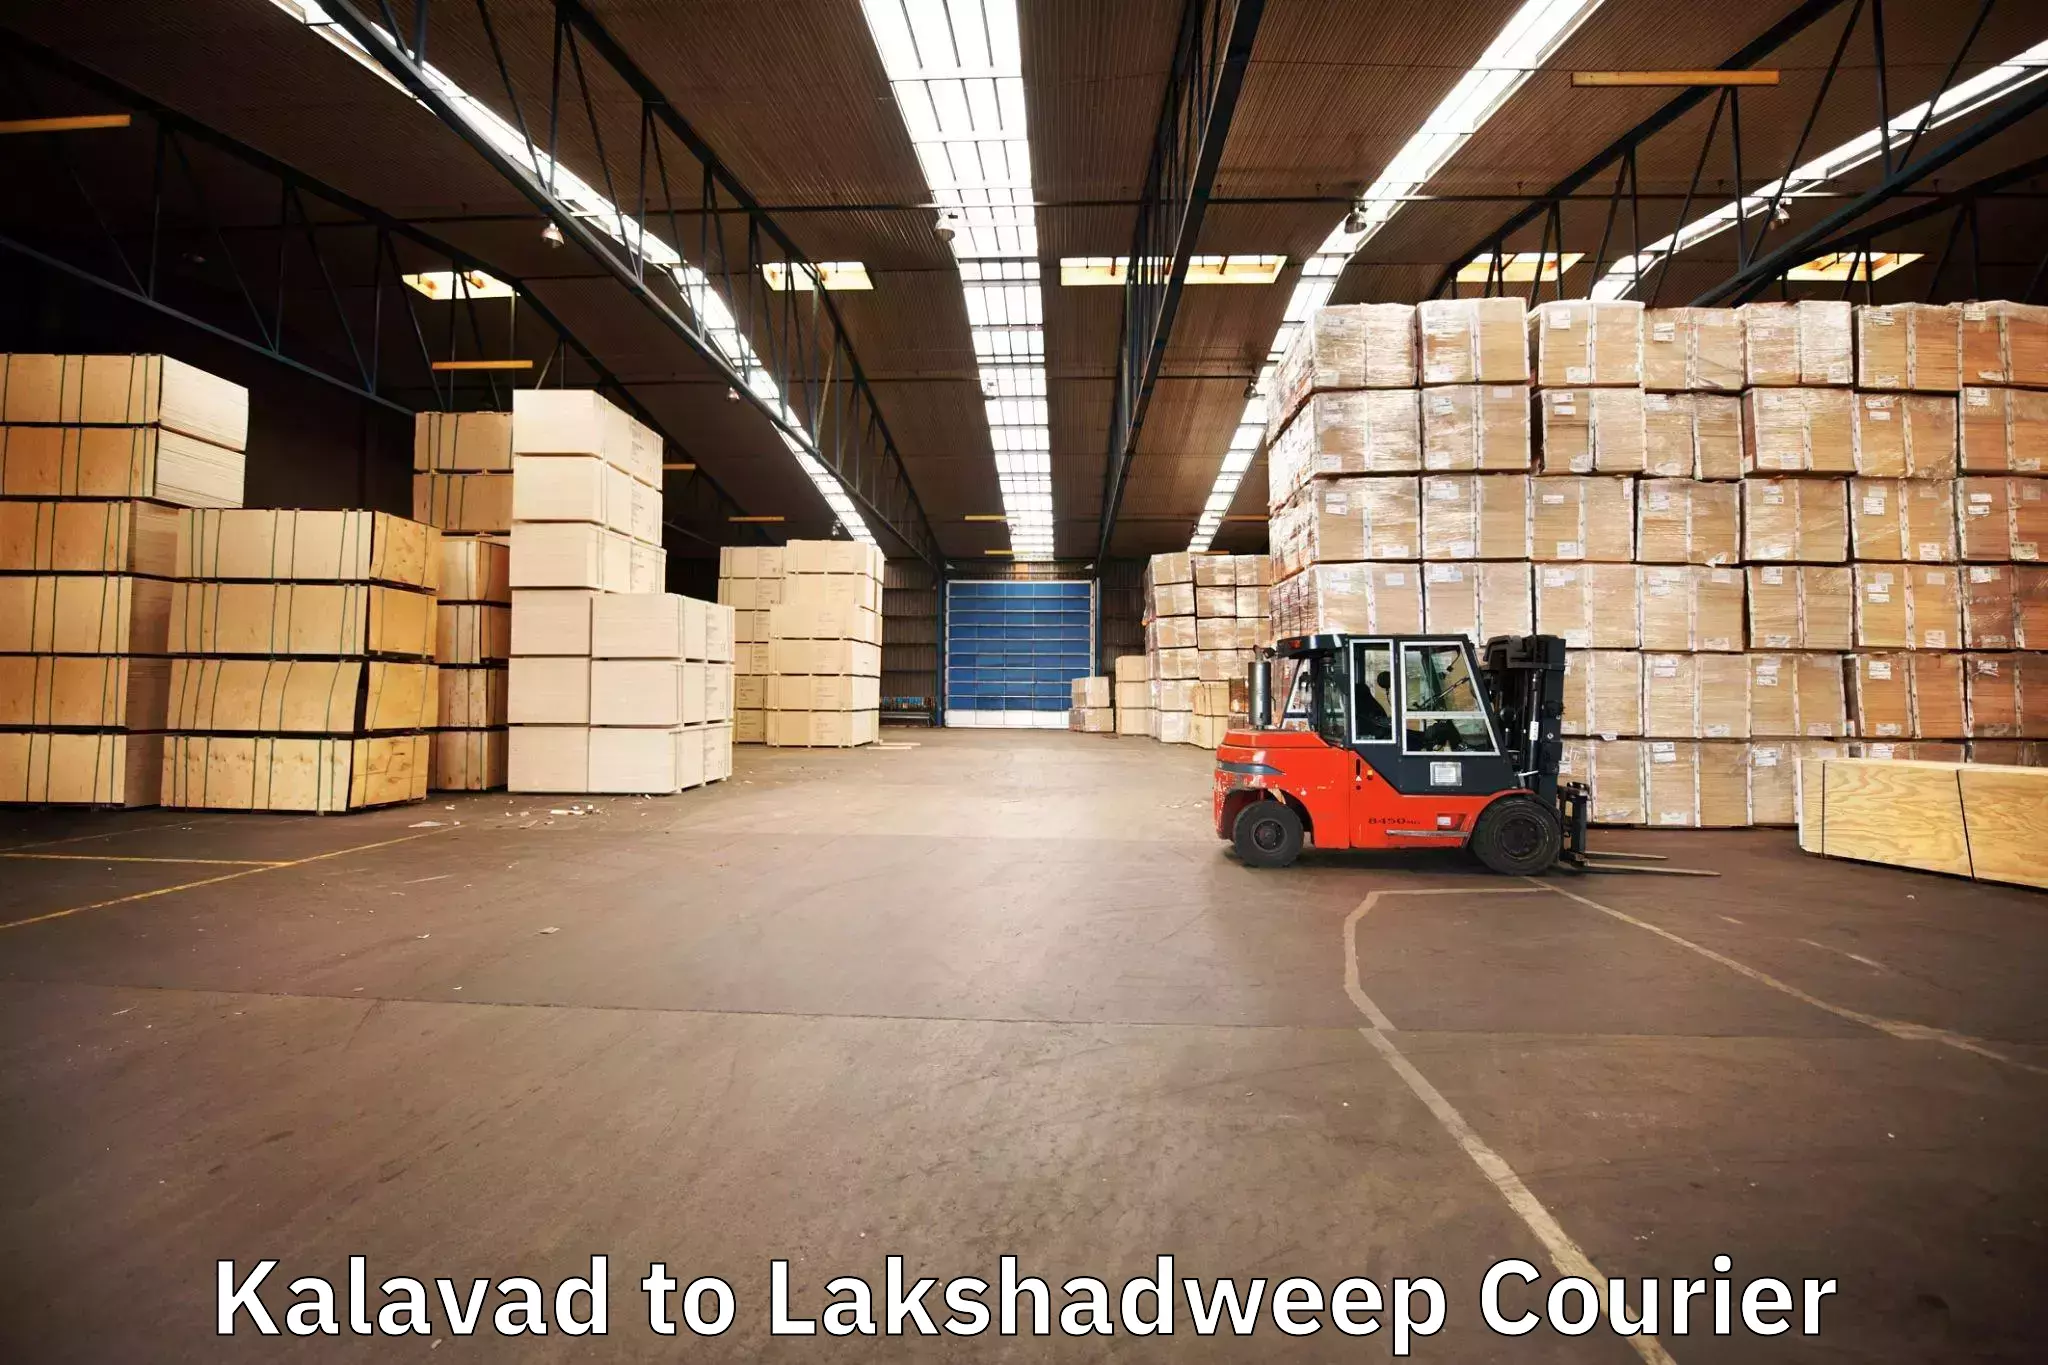 Furniture transport experts Kalavad to Lakshadweep